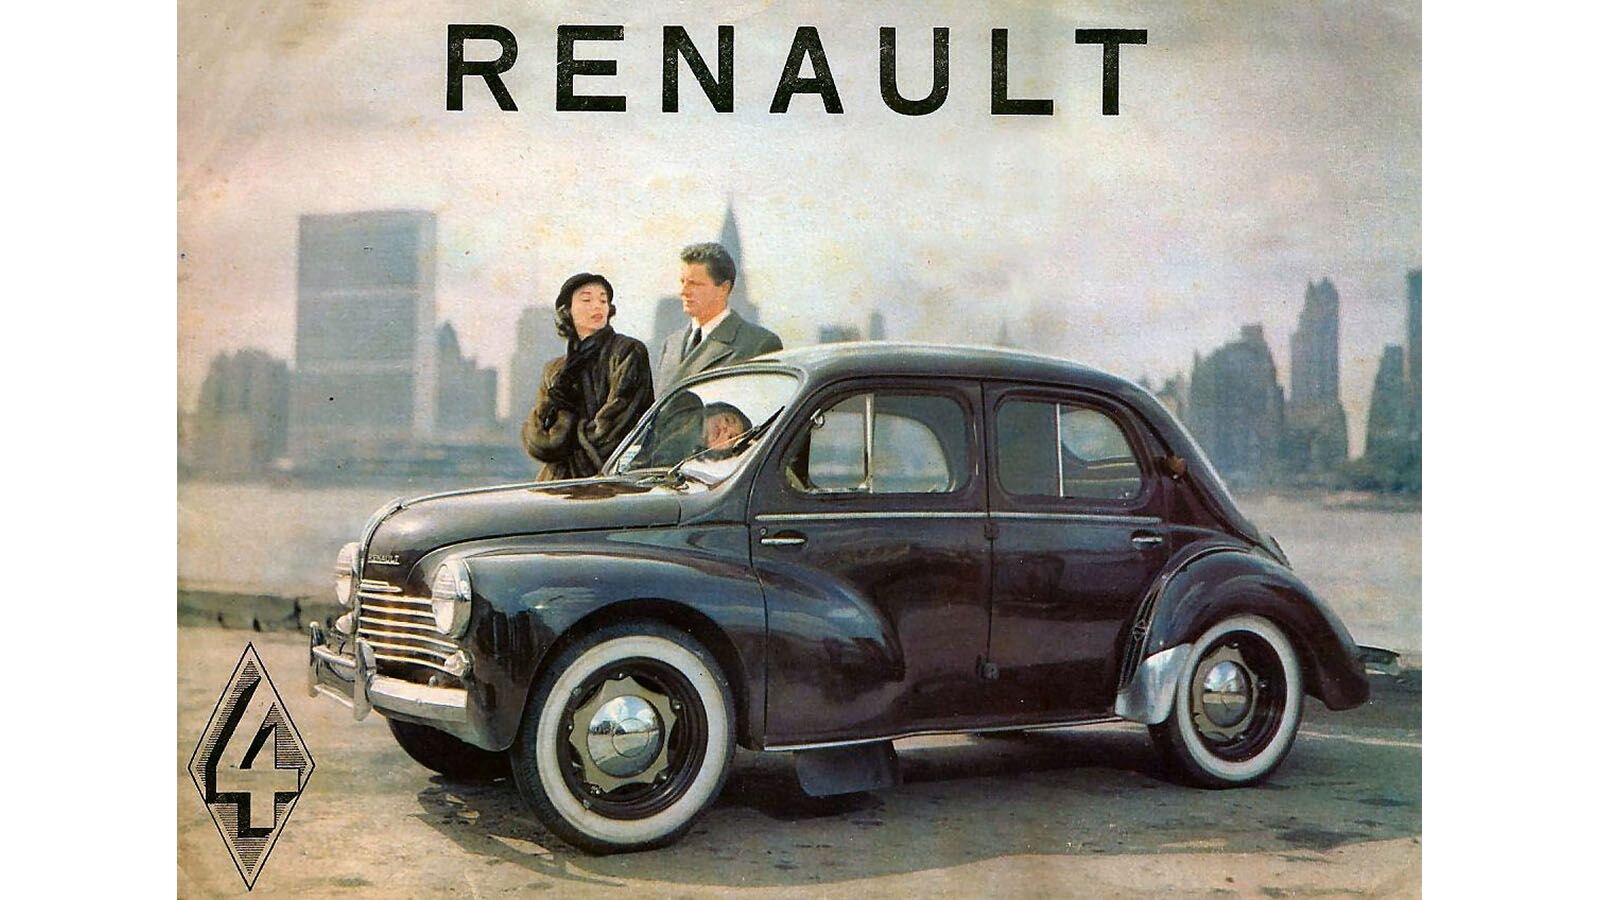 1954-renault-4cv-brochure-page-1.jpg